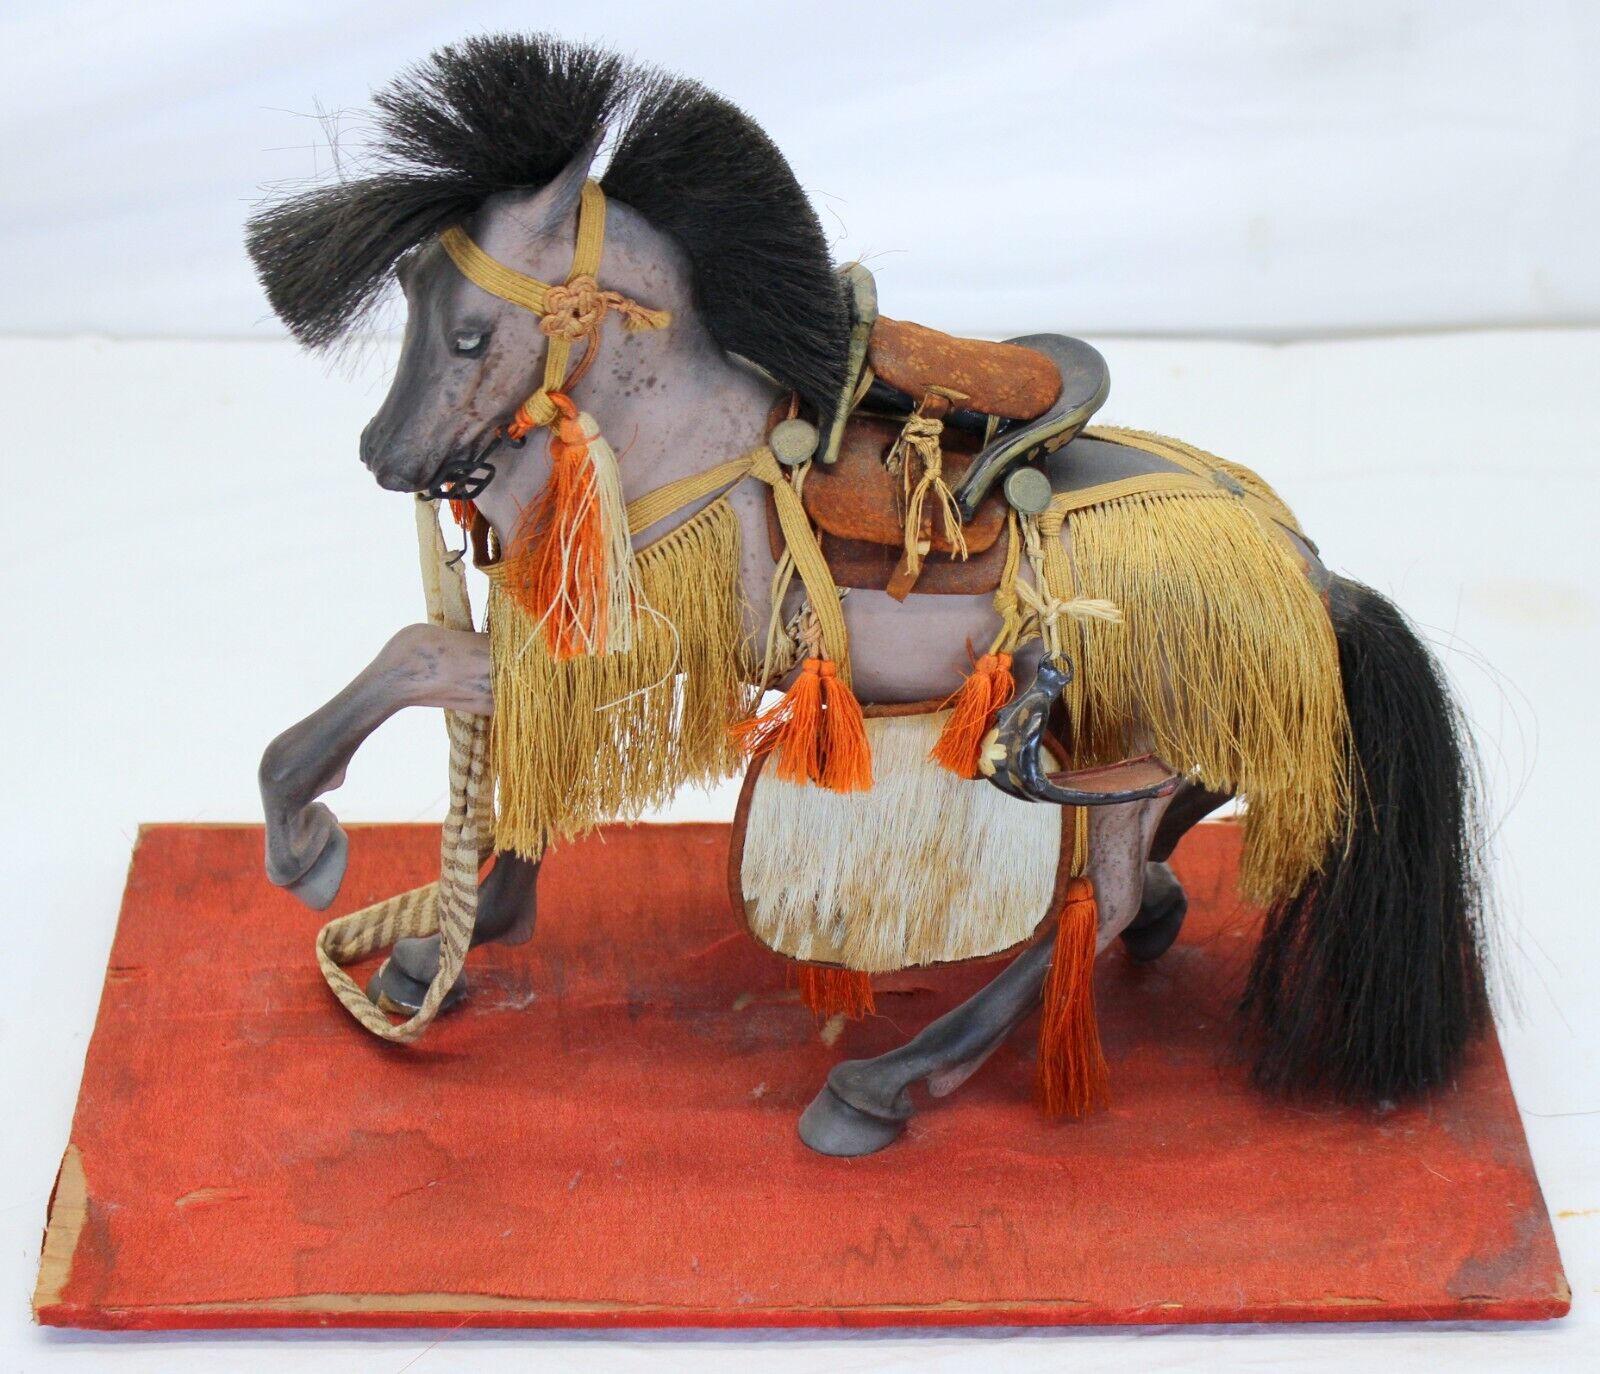 MEIJI PERIOD Paper Mache SAMURAI HORSE MODEL c 1868 GLASS CASE Old Early Display